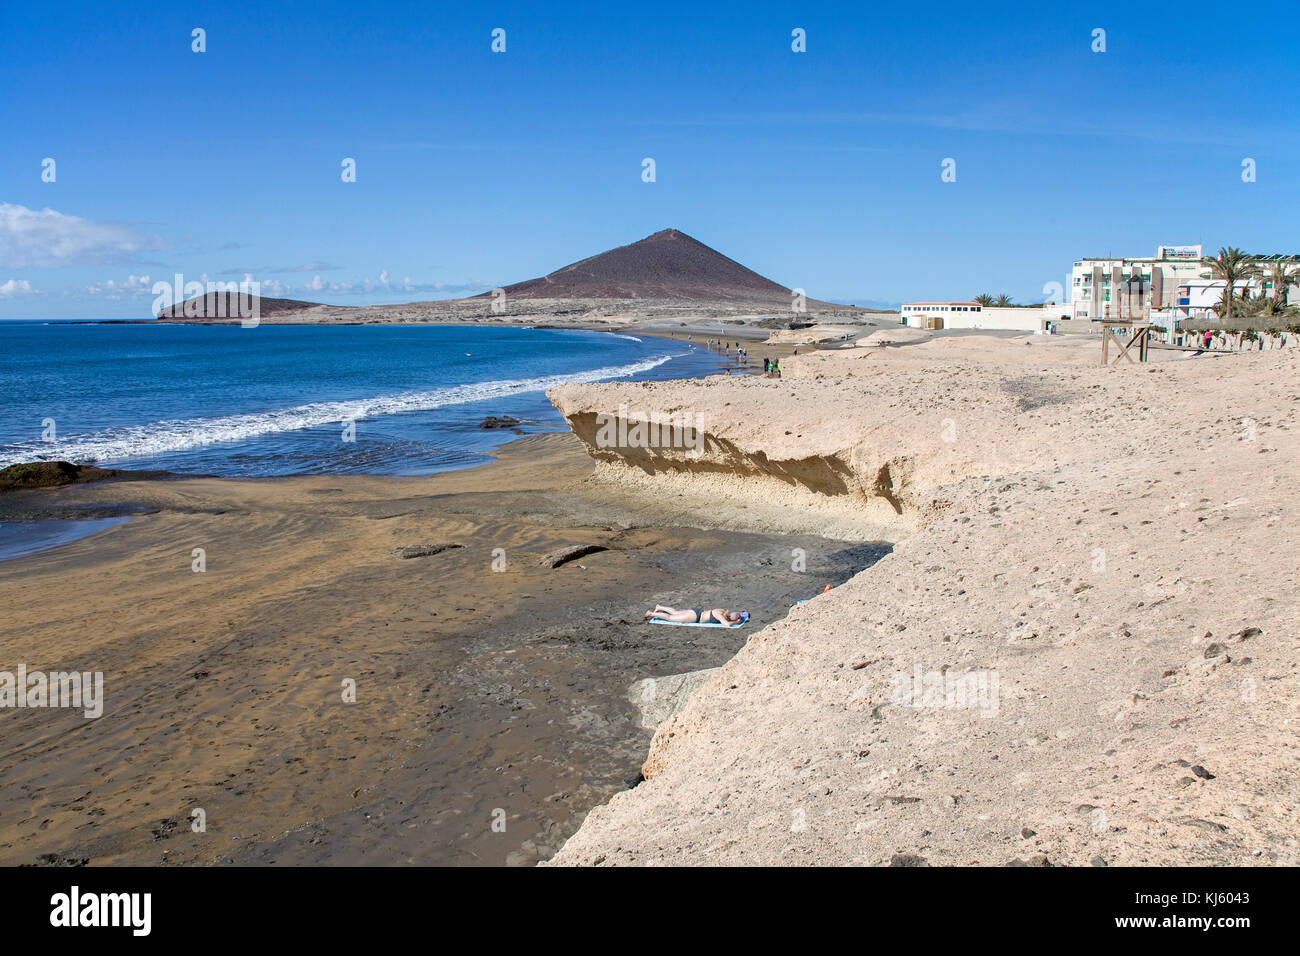 Strand von El Medano und Montana Roja, ein beliebtes Ziel für Surfer auf Teneriffa, Kanarische Inseln, Spanien Stockfoto